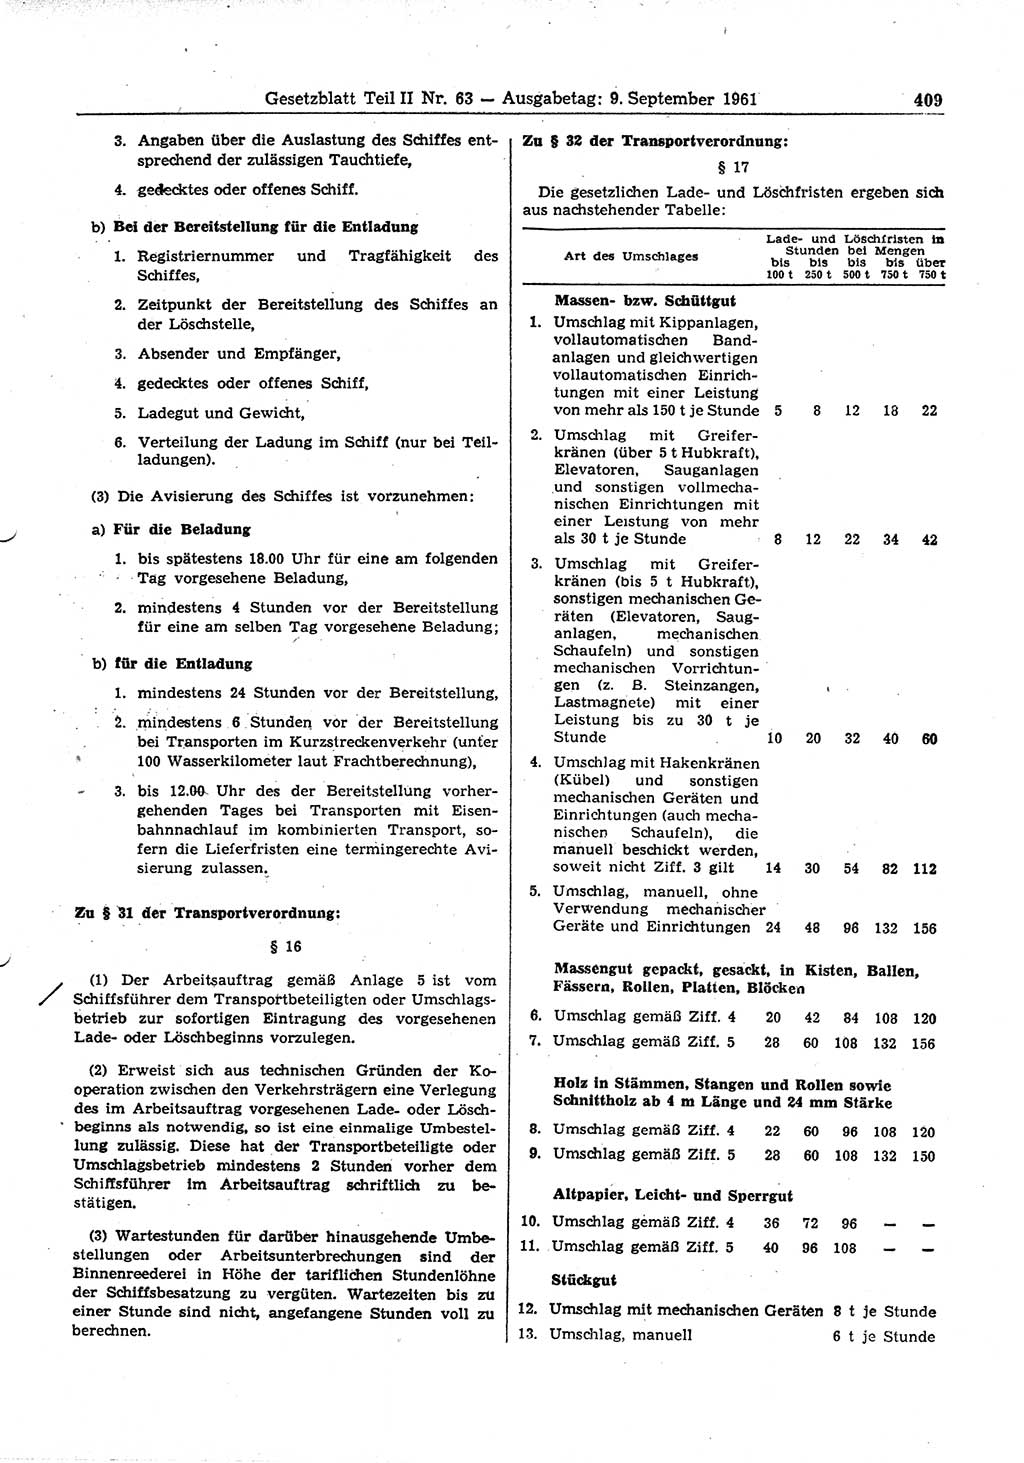 Gesetzblatt (GBl.) der Deutschen Demokratischen Republik (DDR) Teil ⅠⅠ 1961, Seite 409 (GBl. DDR ⅠⅠ 1961, S. 409)